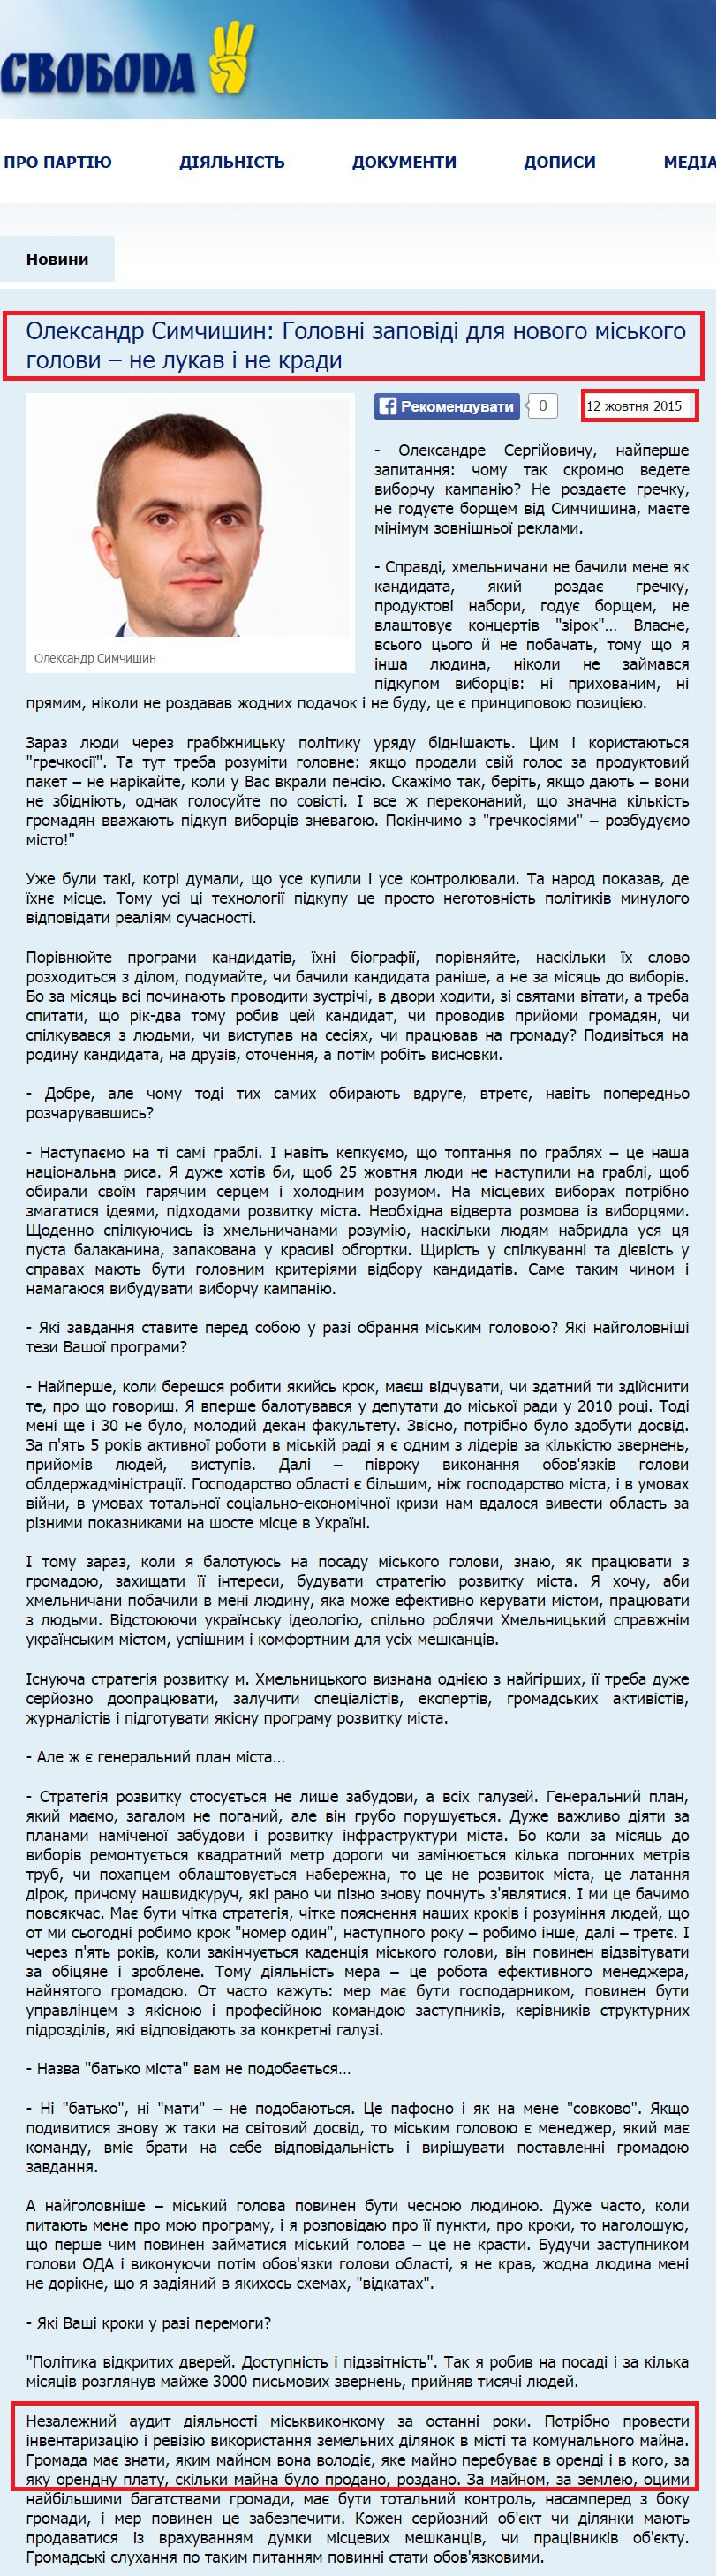 http://khmelnytskyy.svoboda.org.ua/news/comments/